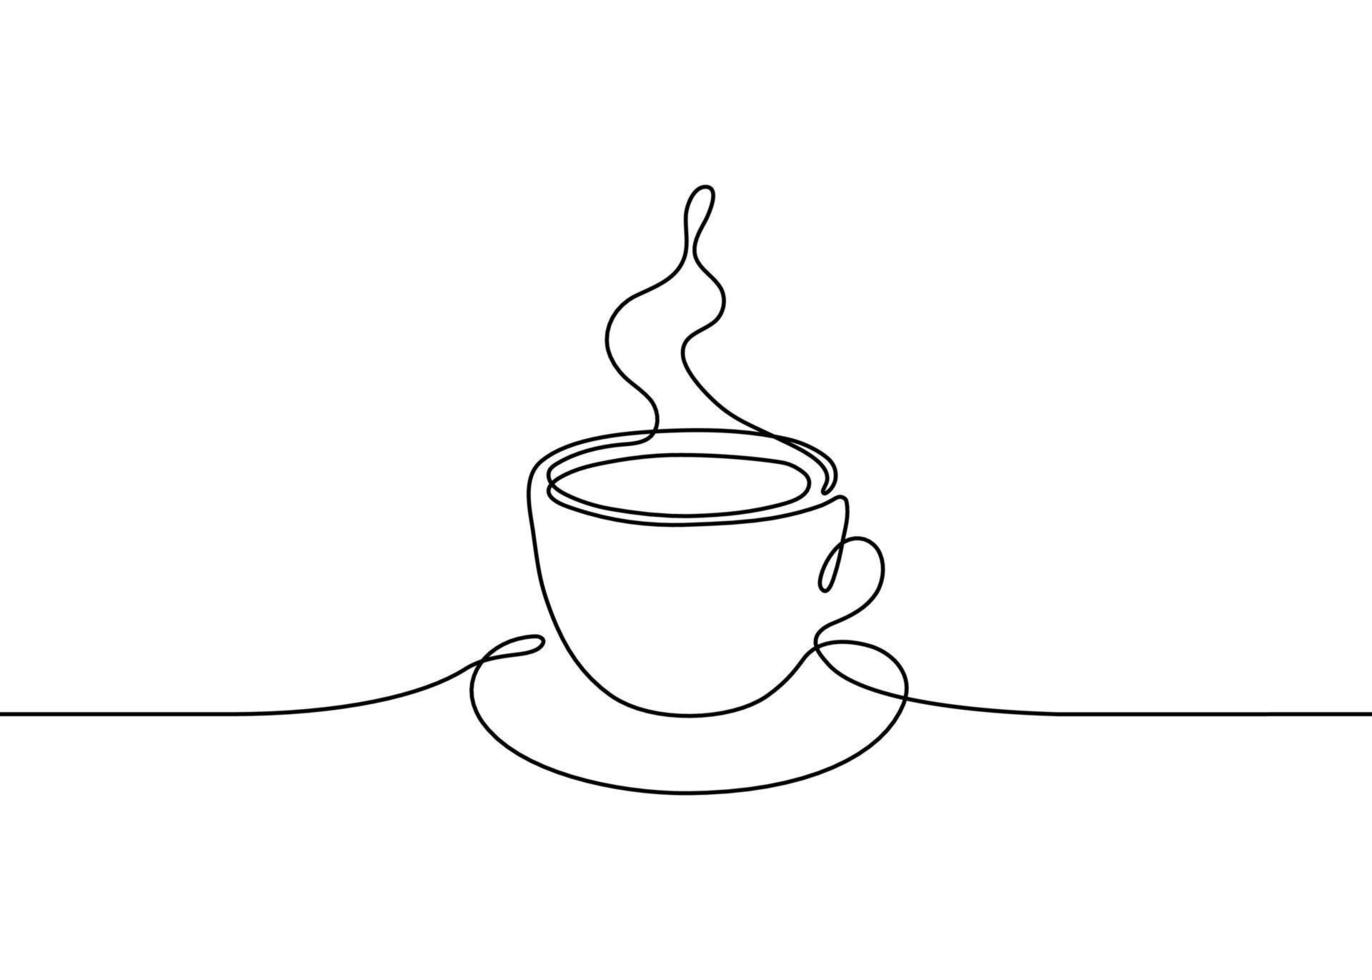 kopje koffie of thee drinken, een enkele doorlopende lijntekening. eenvoudige abstracte schets mooie mok met stoomdrank. vector illustratie